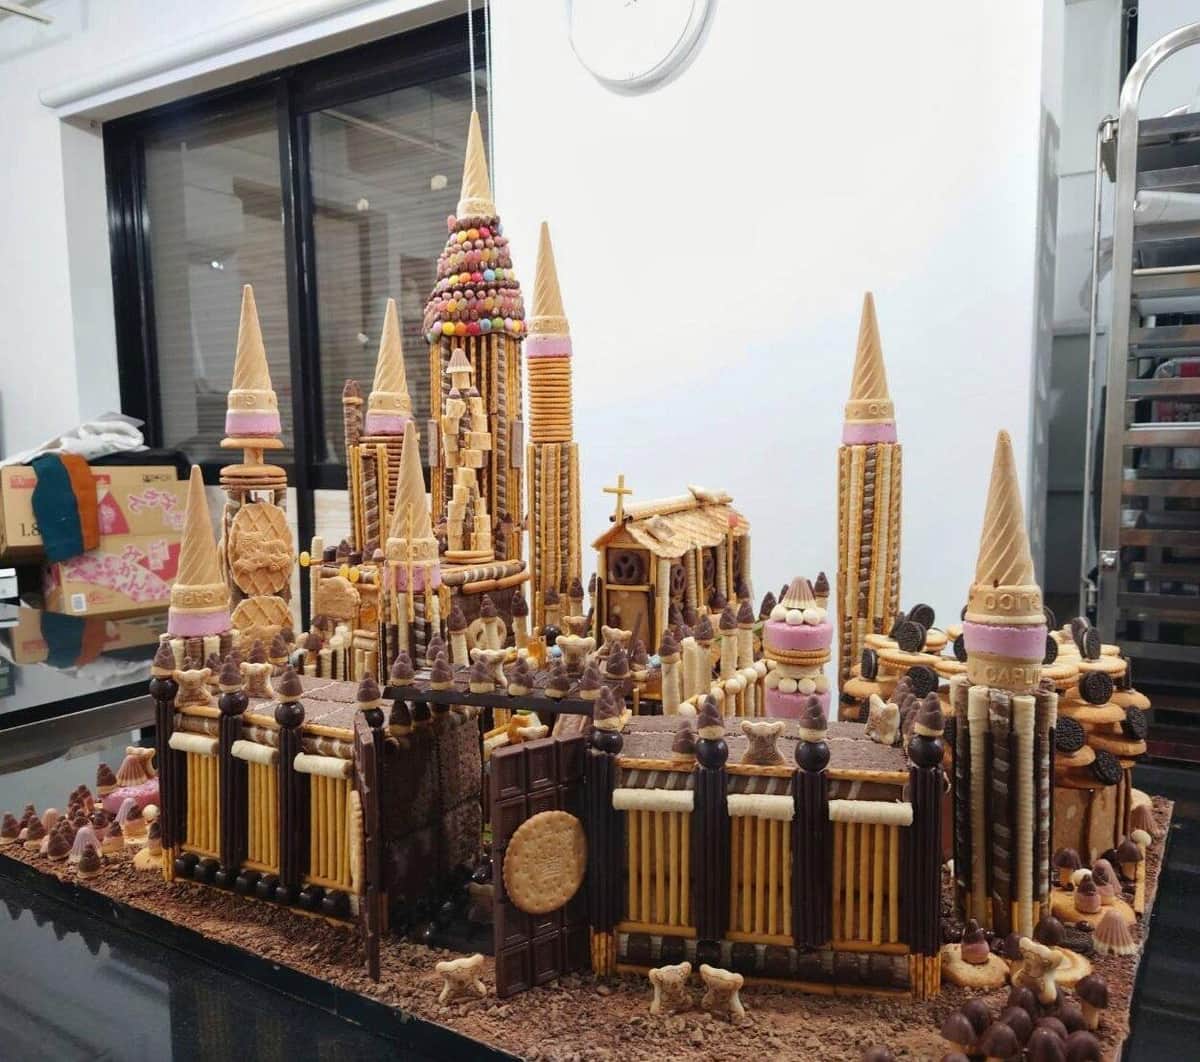 パティシエがノリで「お菓子の家」作ったら...41万いいねの大反響　「もはや城」「夢のような光景」